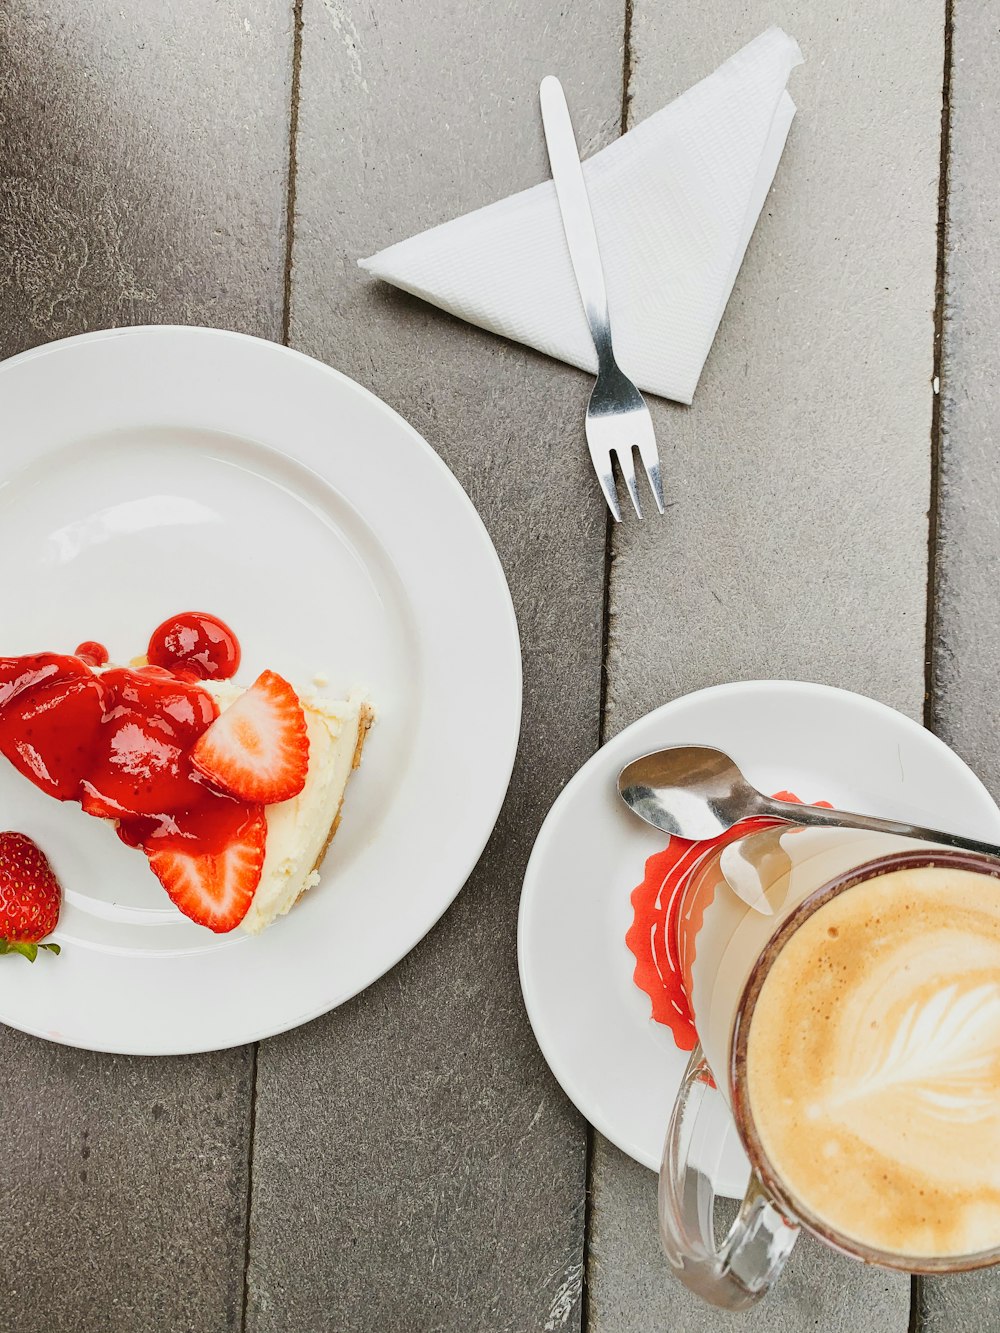 Fraise et fraise sur assiette en céramique blanche